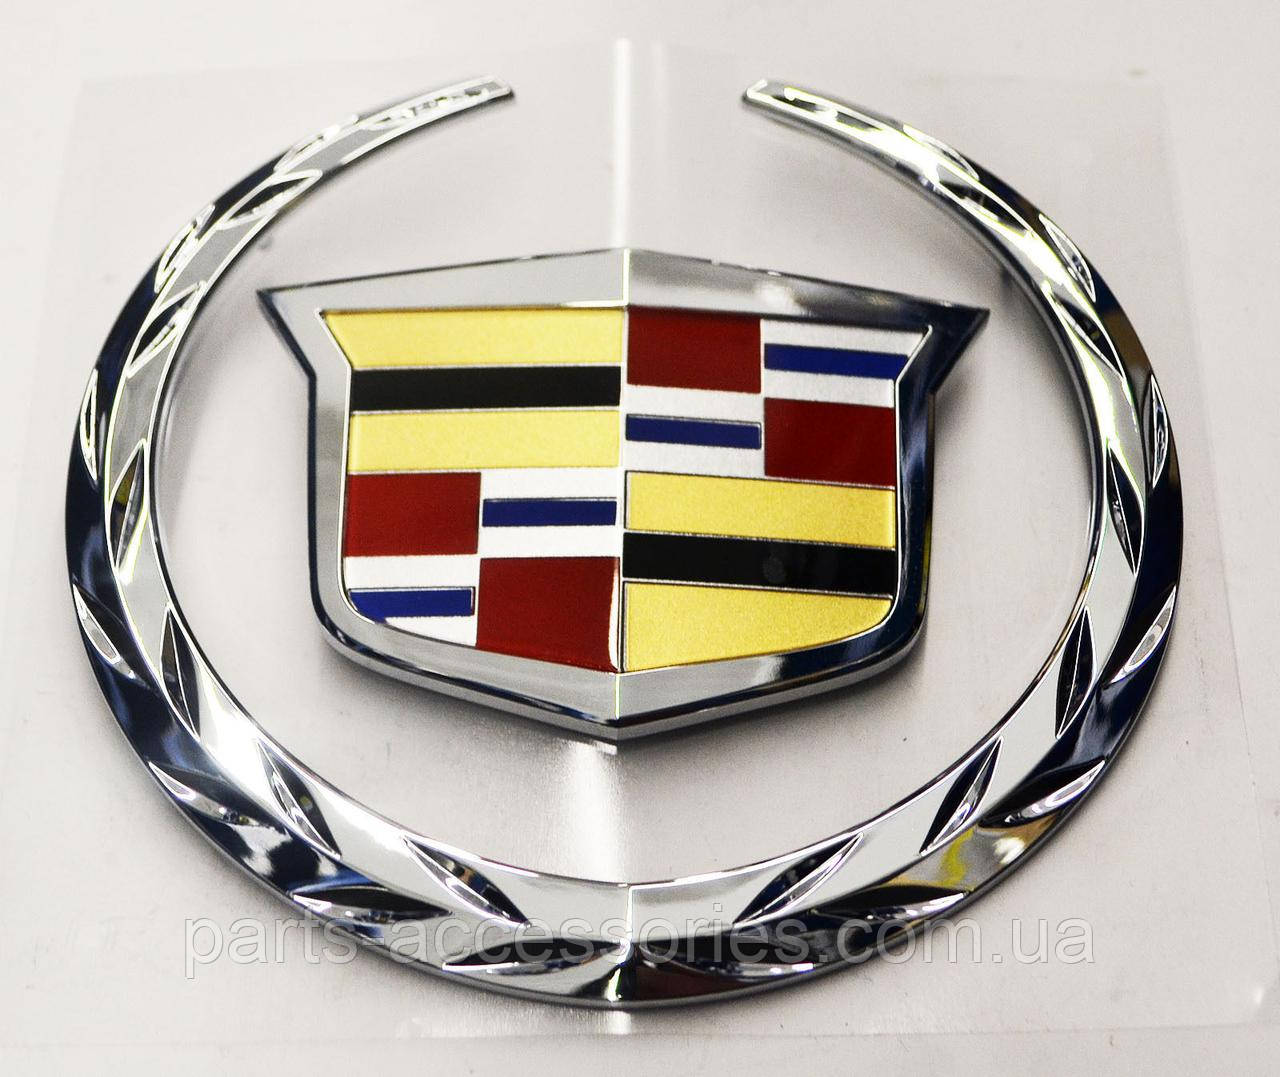 Кадиллак логотип. Кадиллак Эскалейд значок. Кадиллак Эскалейд шильдик. Cadillac Escalade марка. Знак Кадиллака на машине.